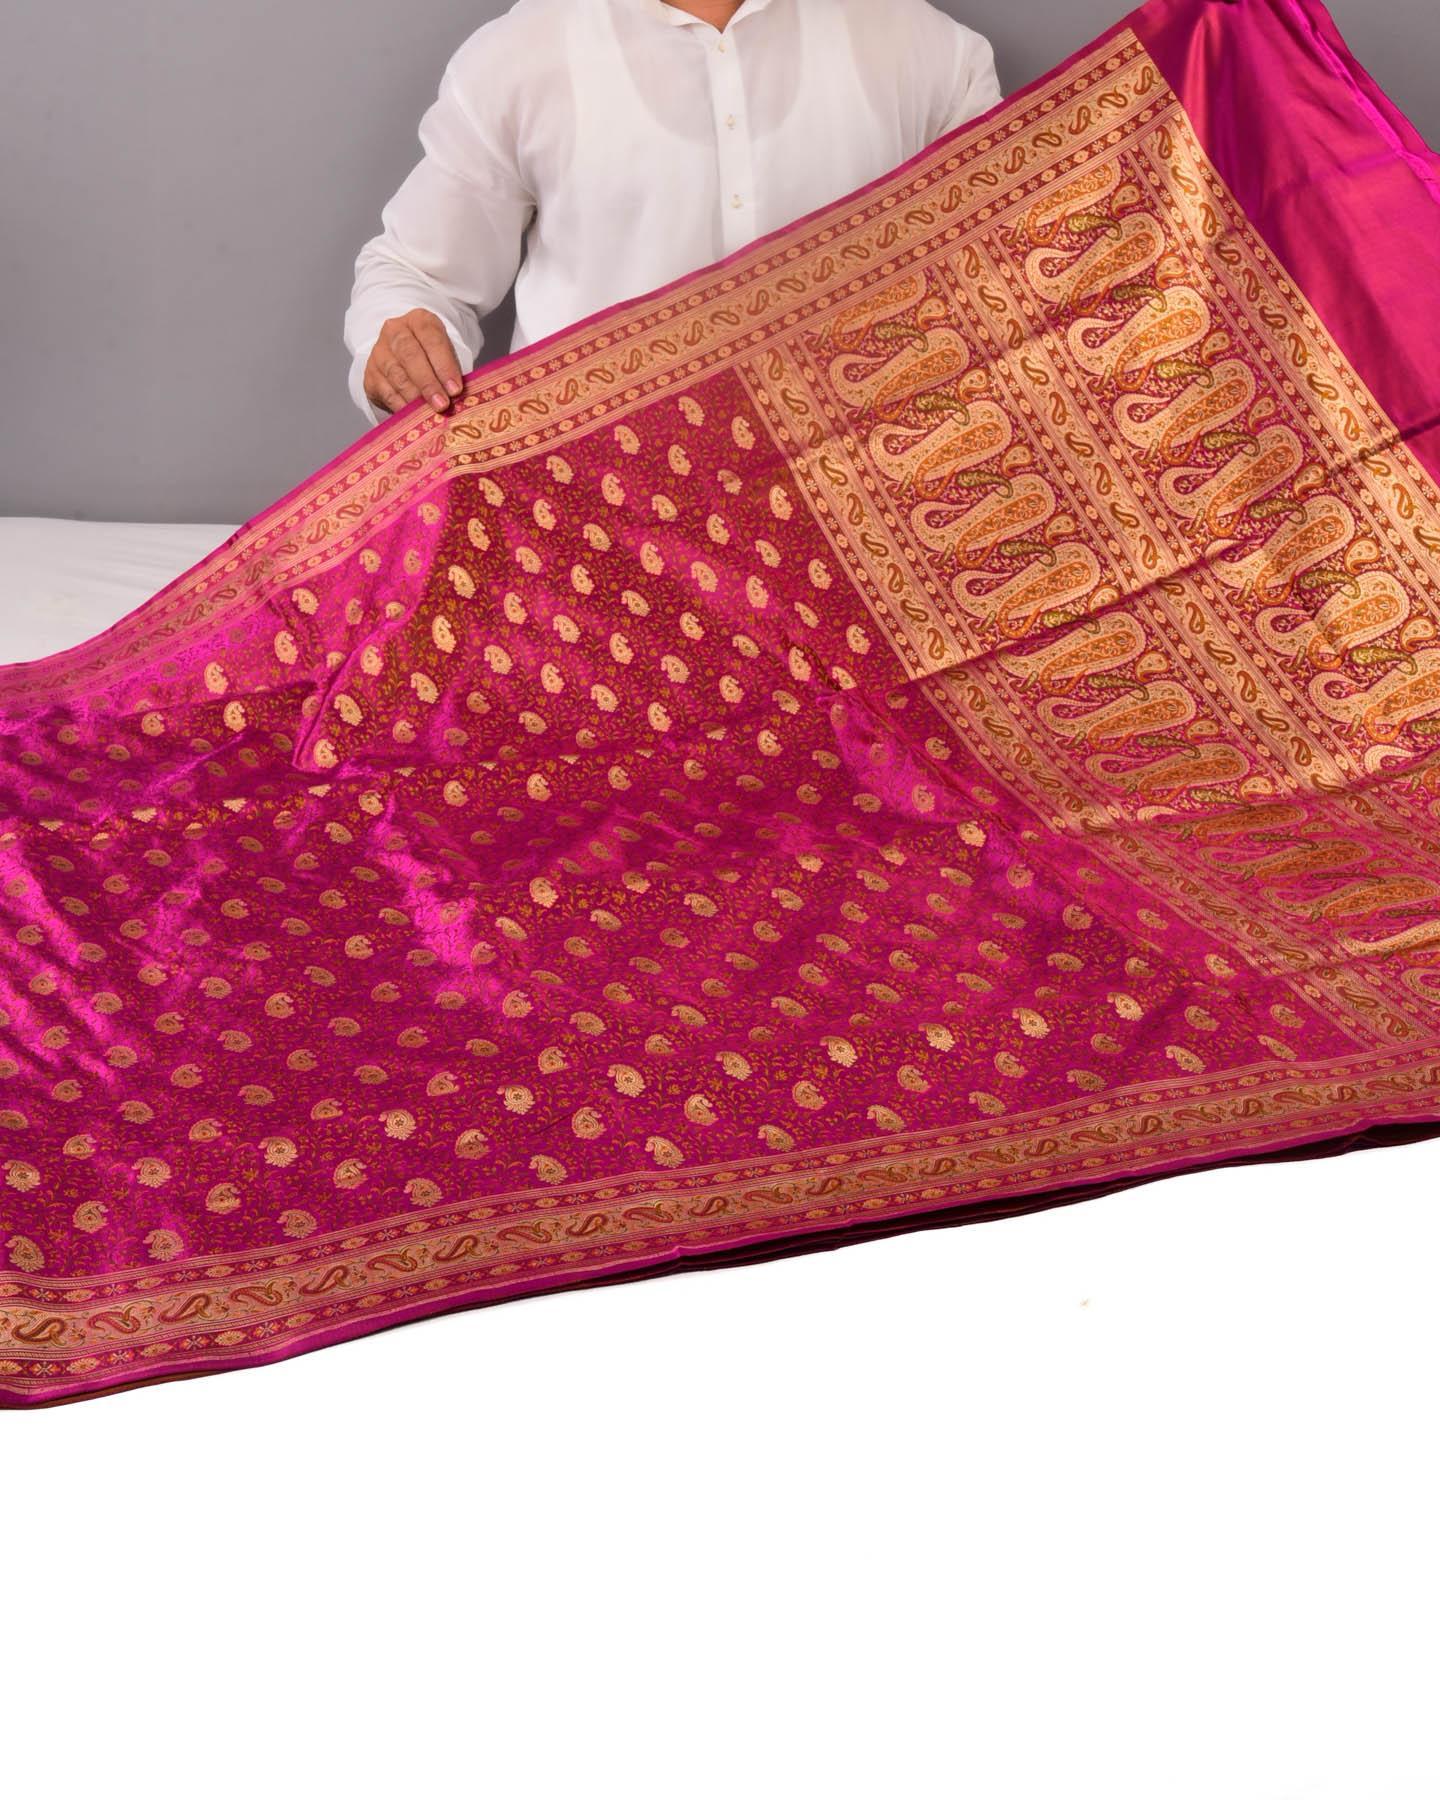 Regal Magenta Banarasi Tehri Jamawar Brocade Handwoven Katan Silk Saree with Zari Accents - By HolyWeaves, Benares